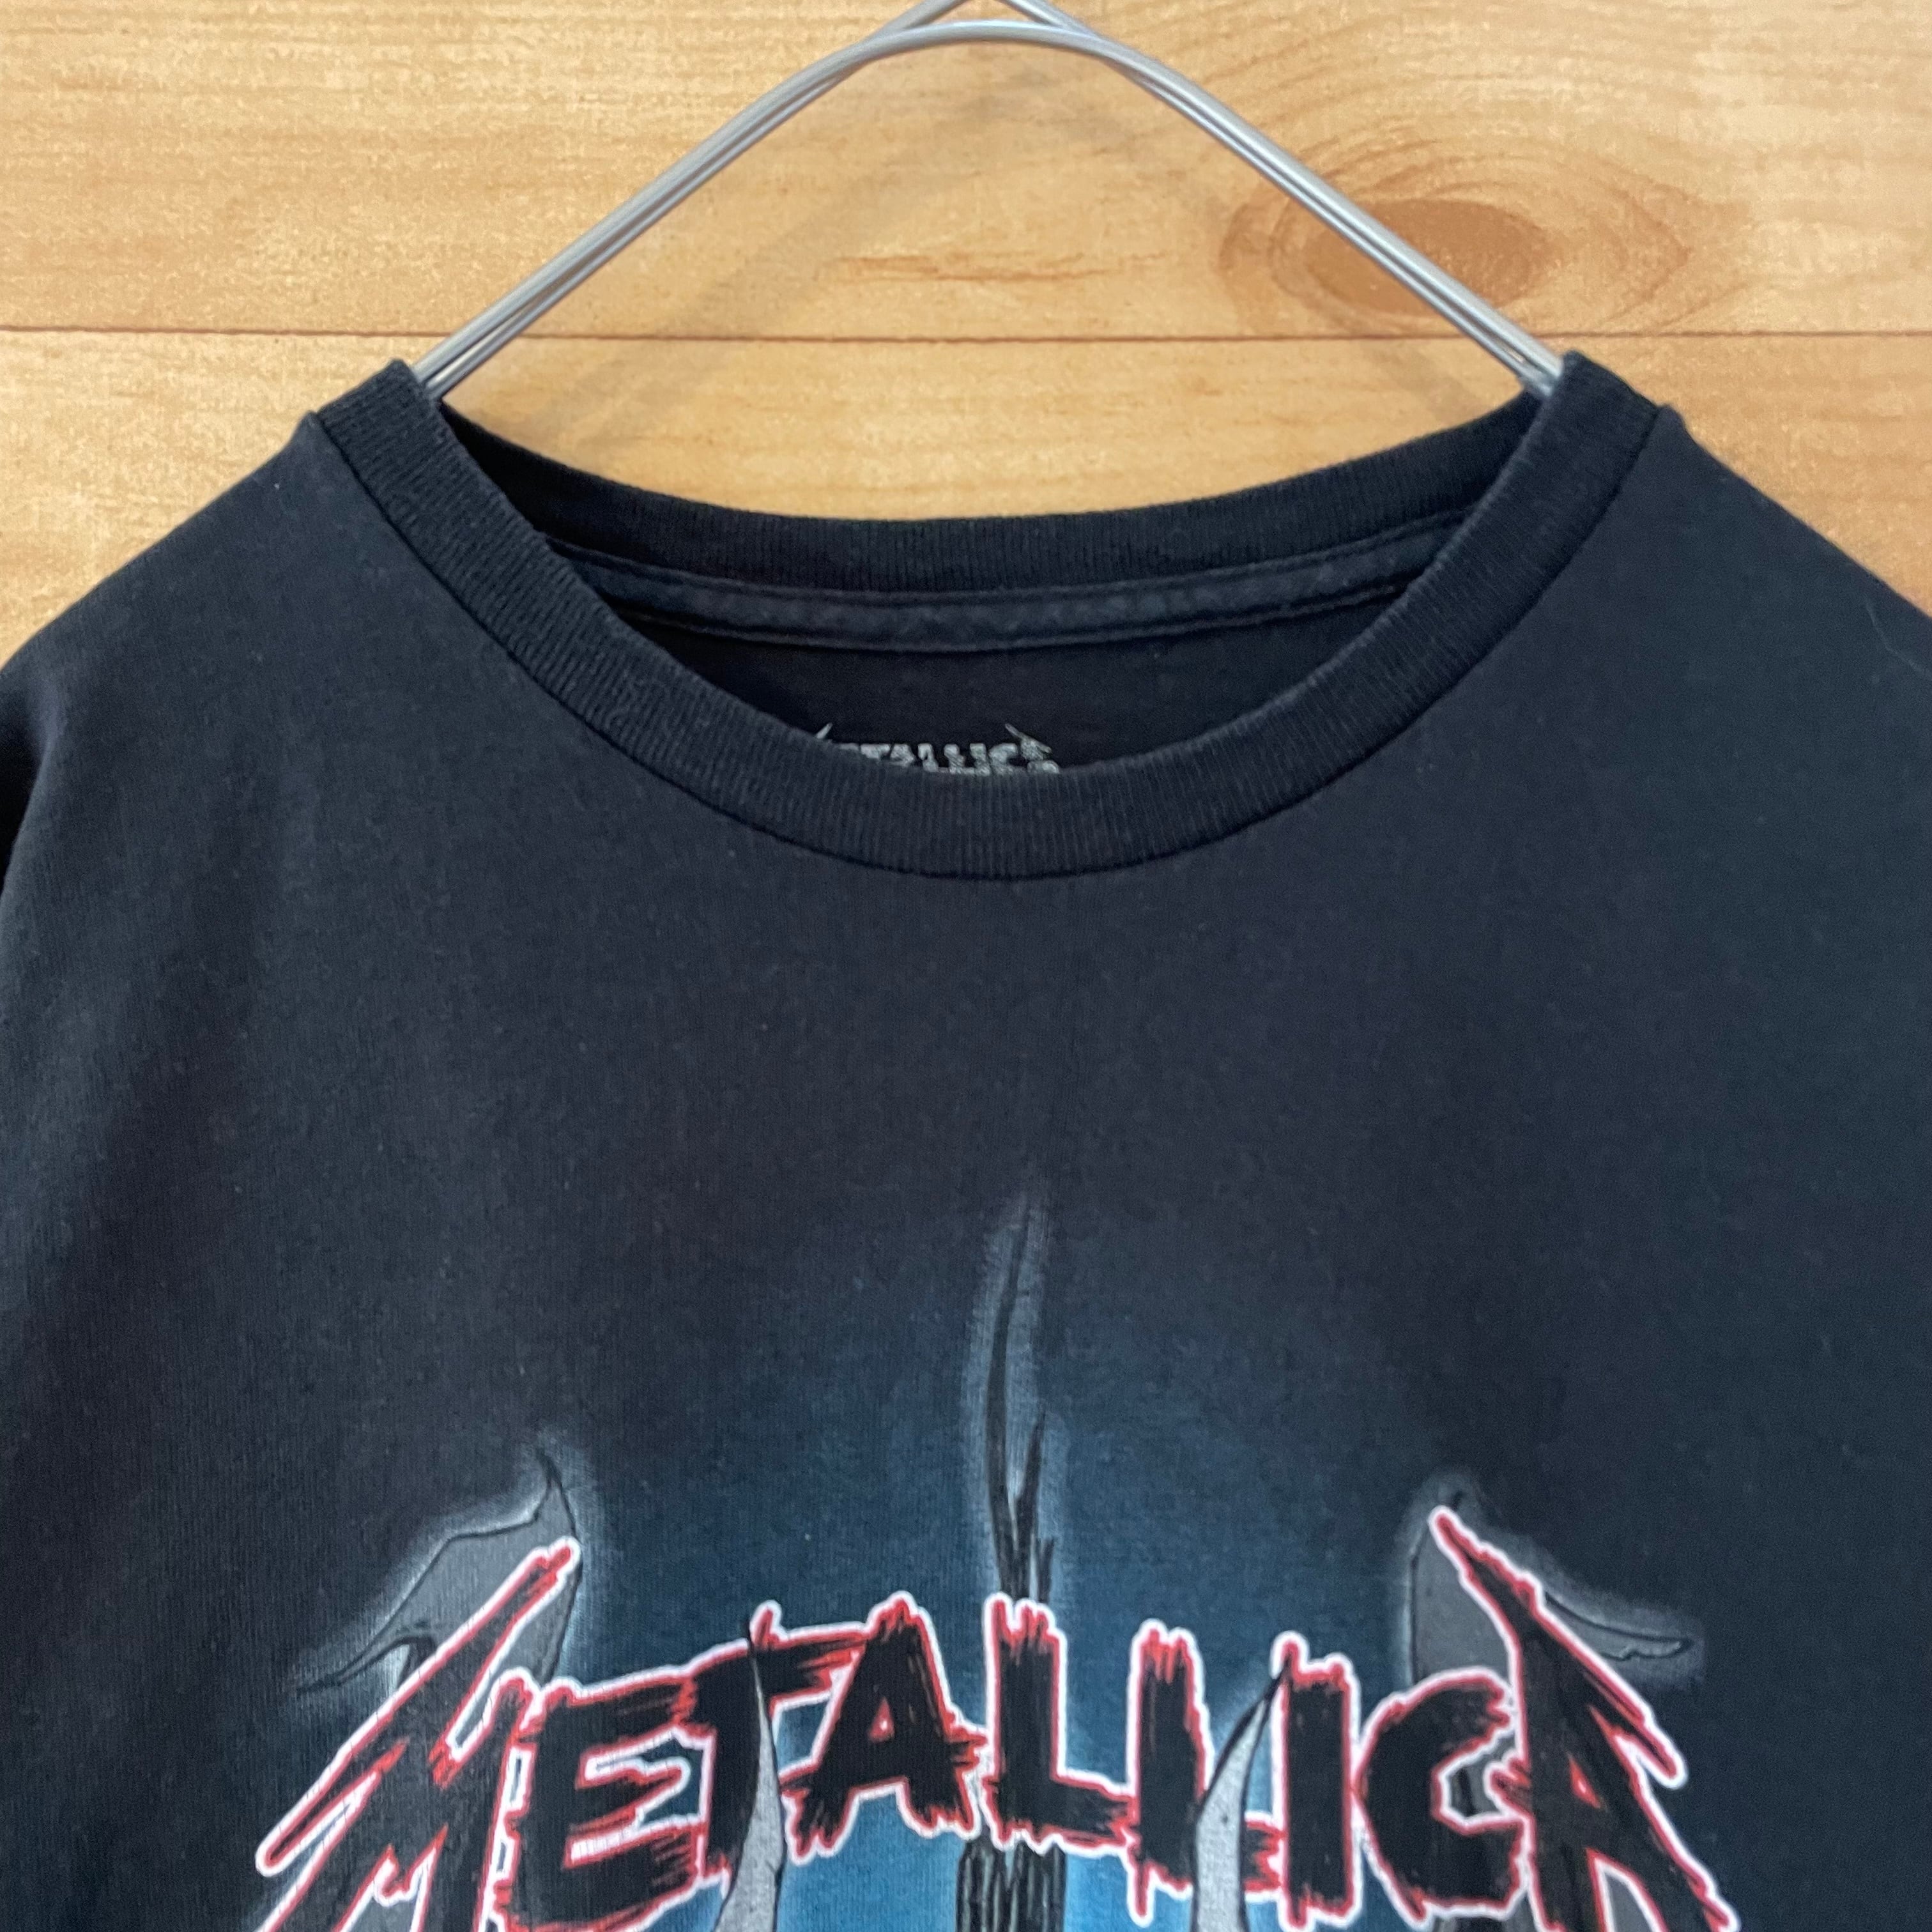 Metallica ジップパーカー オフィシャル 袖プリントあり